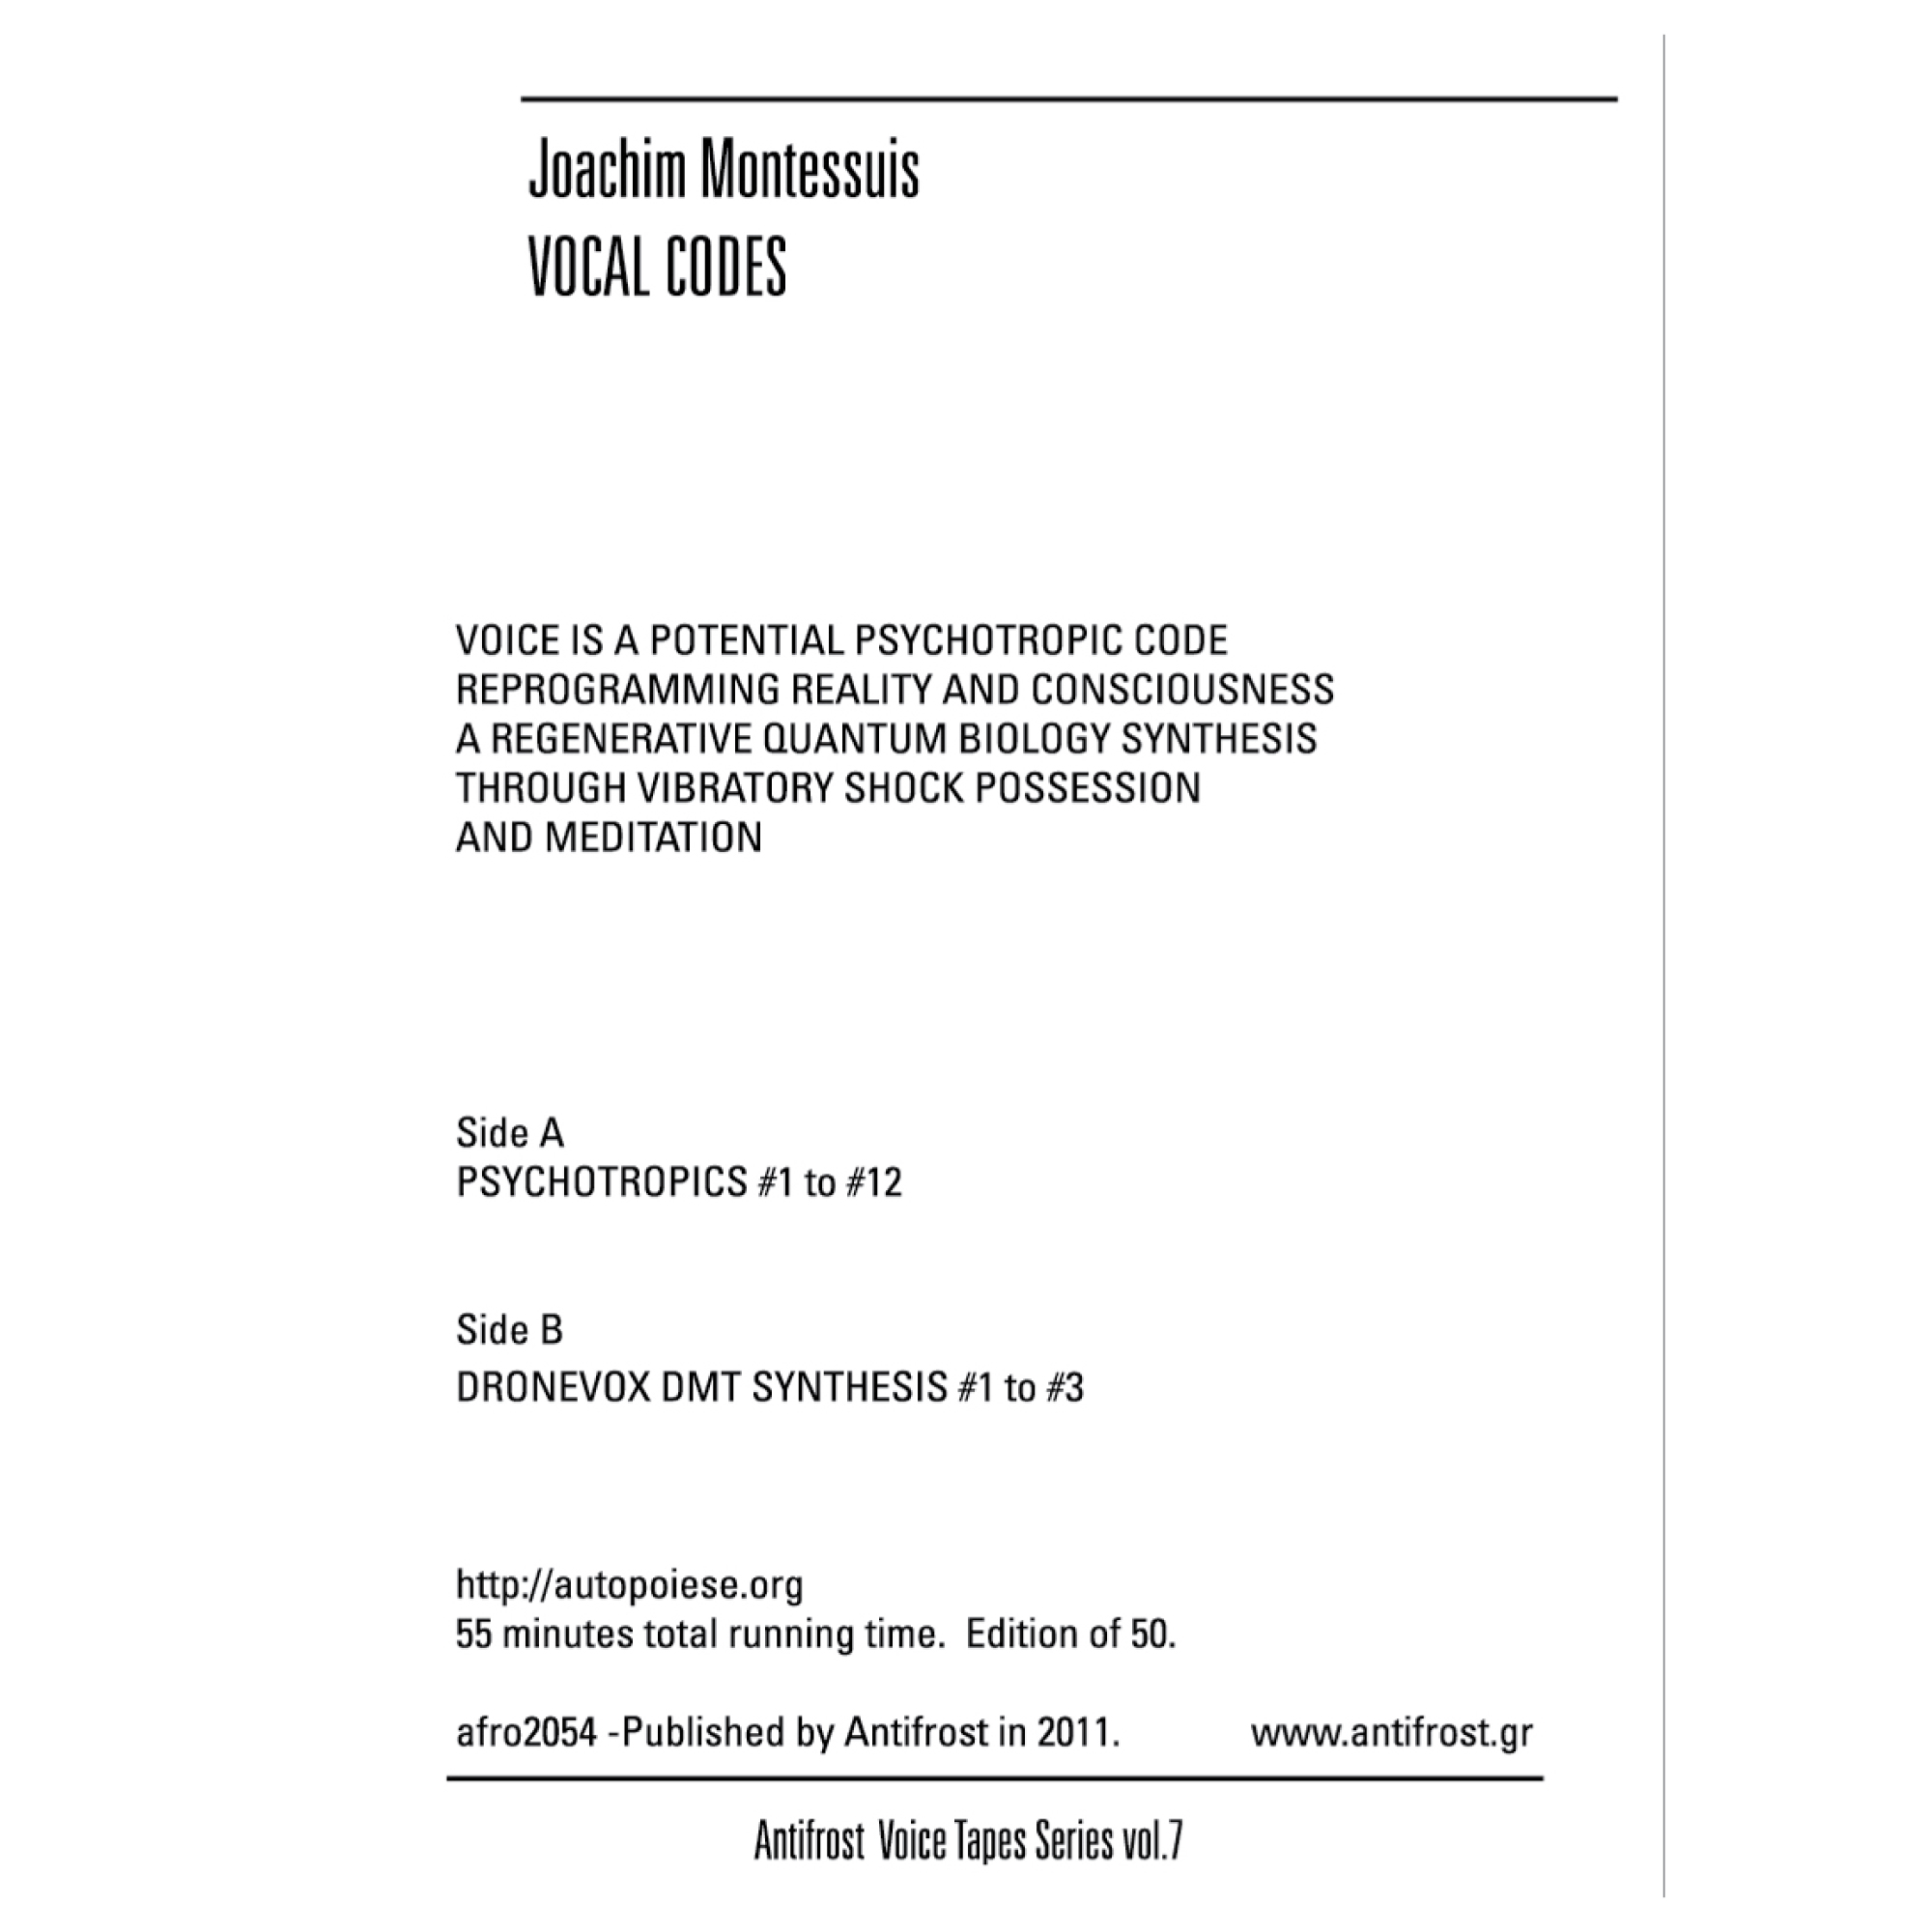 Joachim Montessuis – Vocal codes